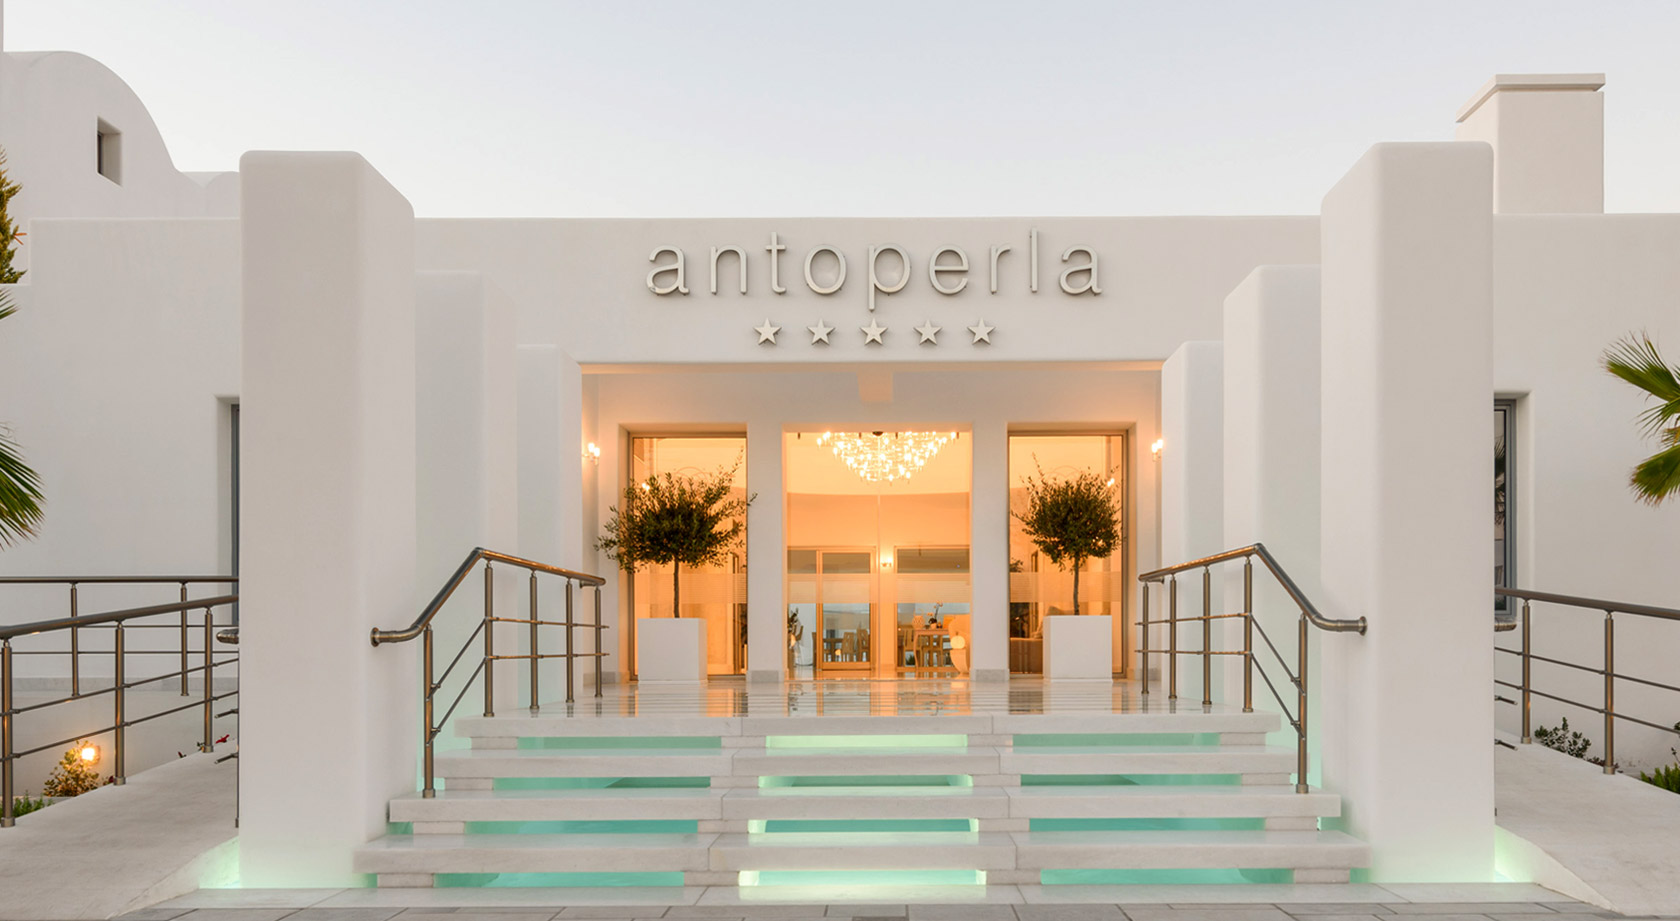 Ξενοδοχειο & Spa Antoperla στη Σαντορινη  - Κεντρικη Εισοδος